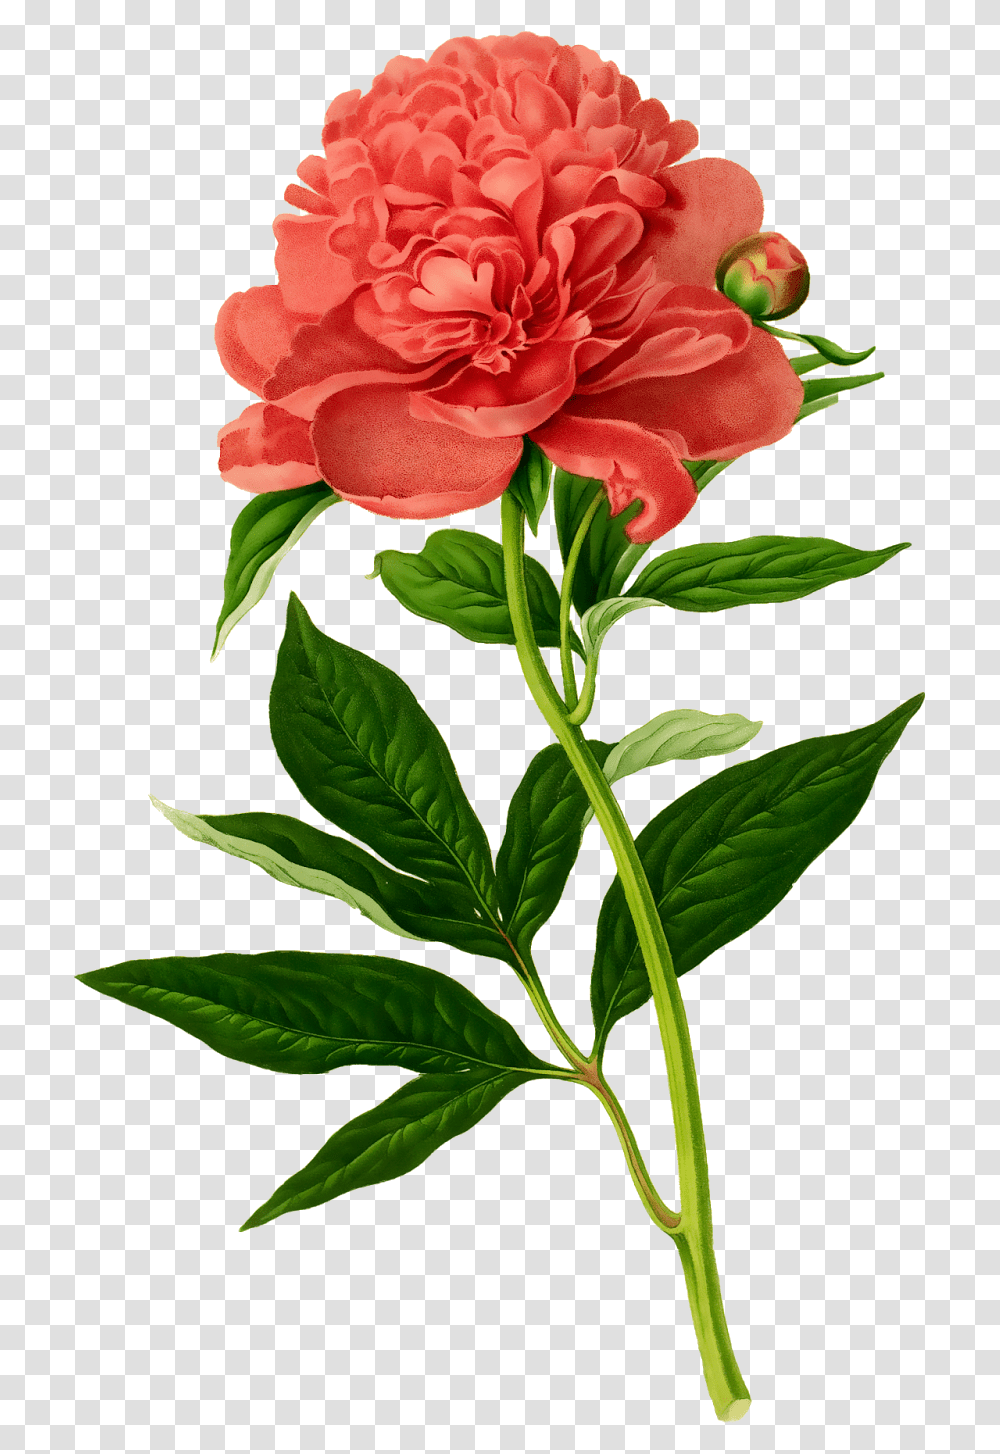 Vintage Floral Botanical Illustration Peonies Drawing, Plant, Flower, Blossom, Rose Transparent Png